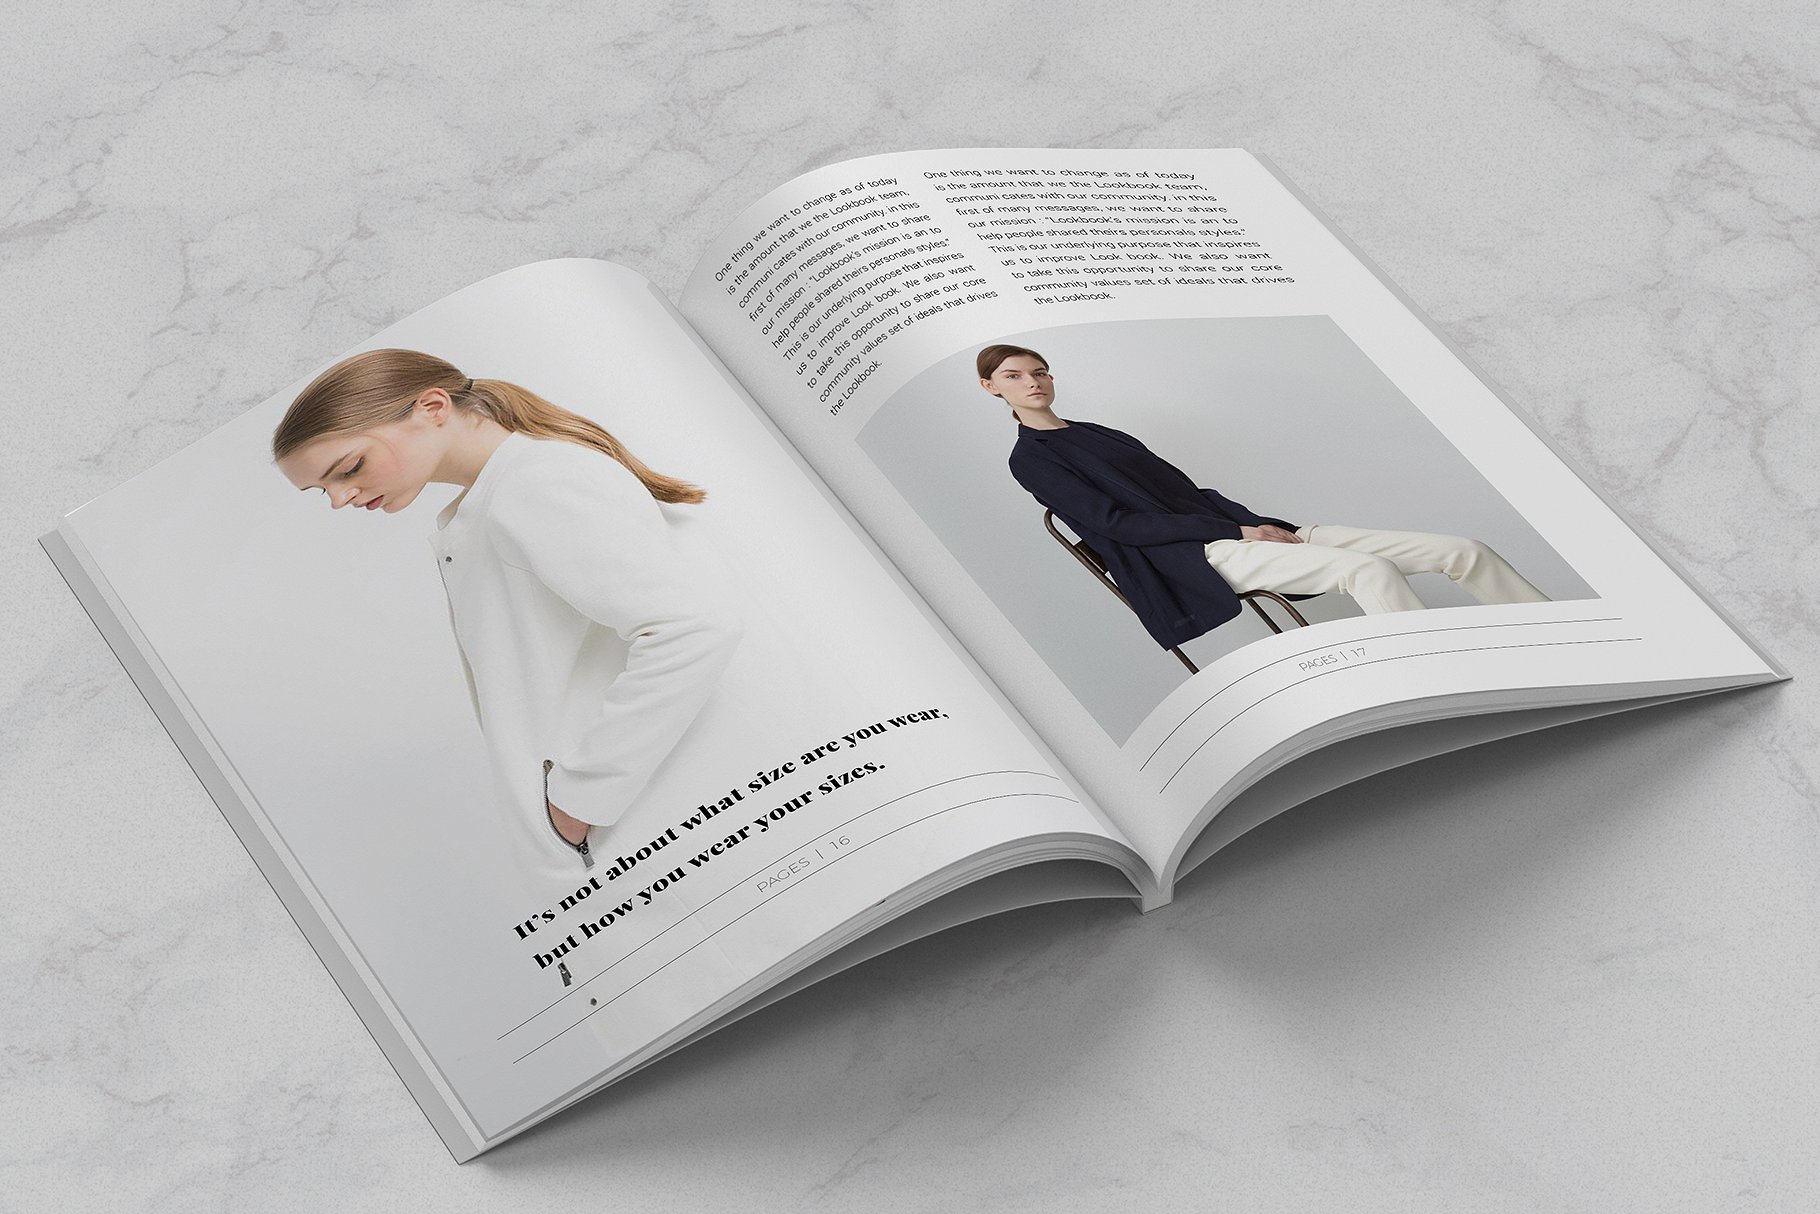 欧美现代大气的服装杂志模版素材 BLANKS | Minim